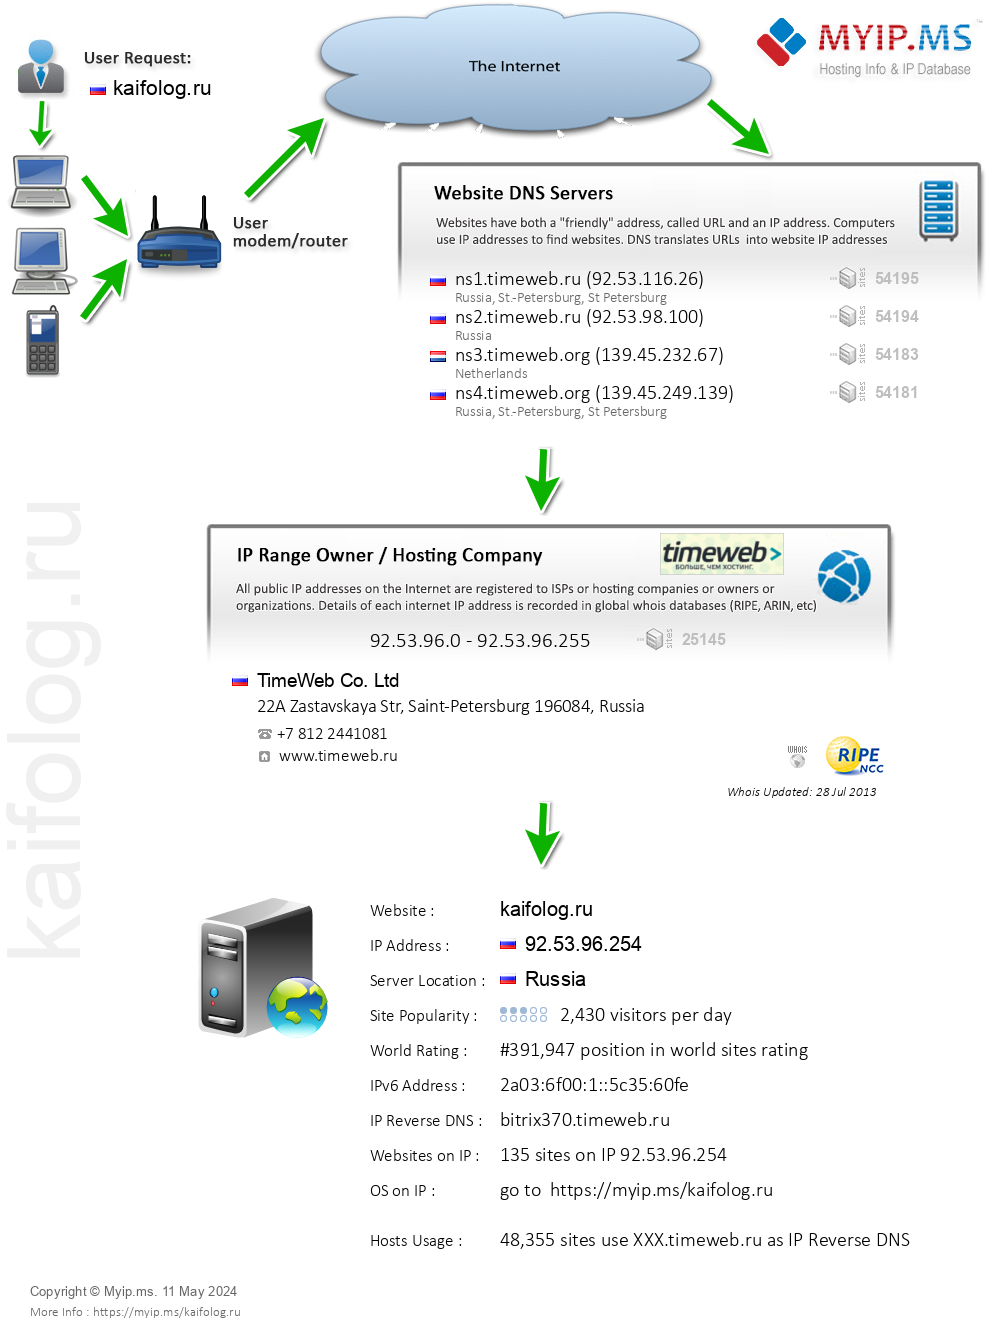 Kaifolog.ru - Website Hosting Visual IP Diagram